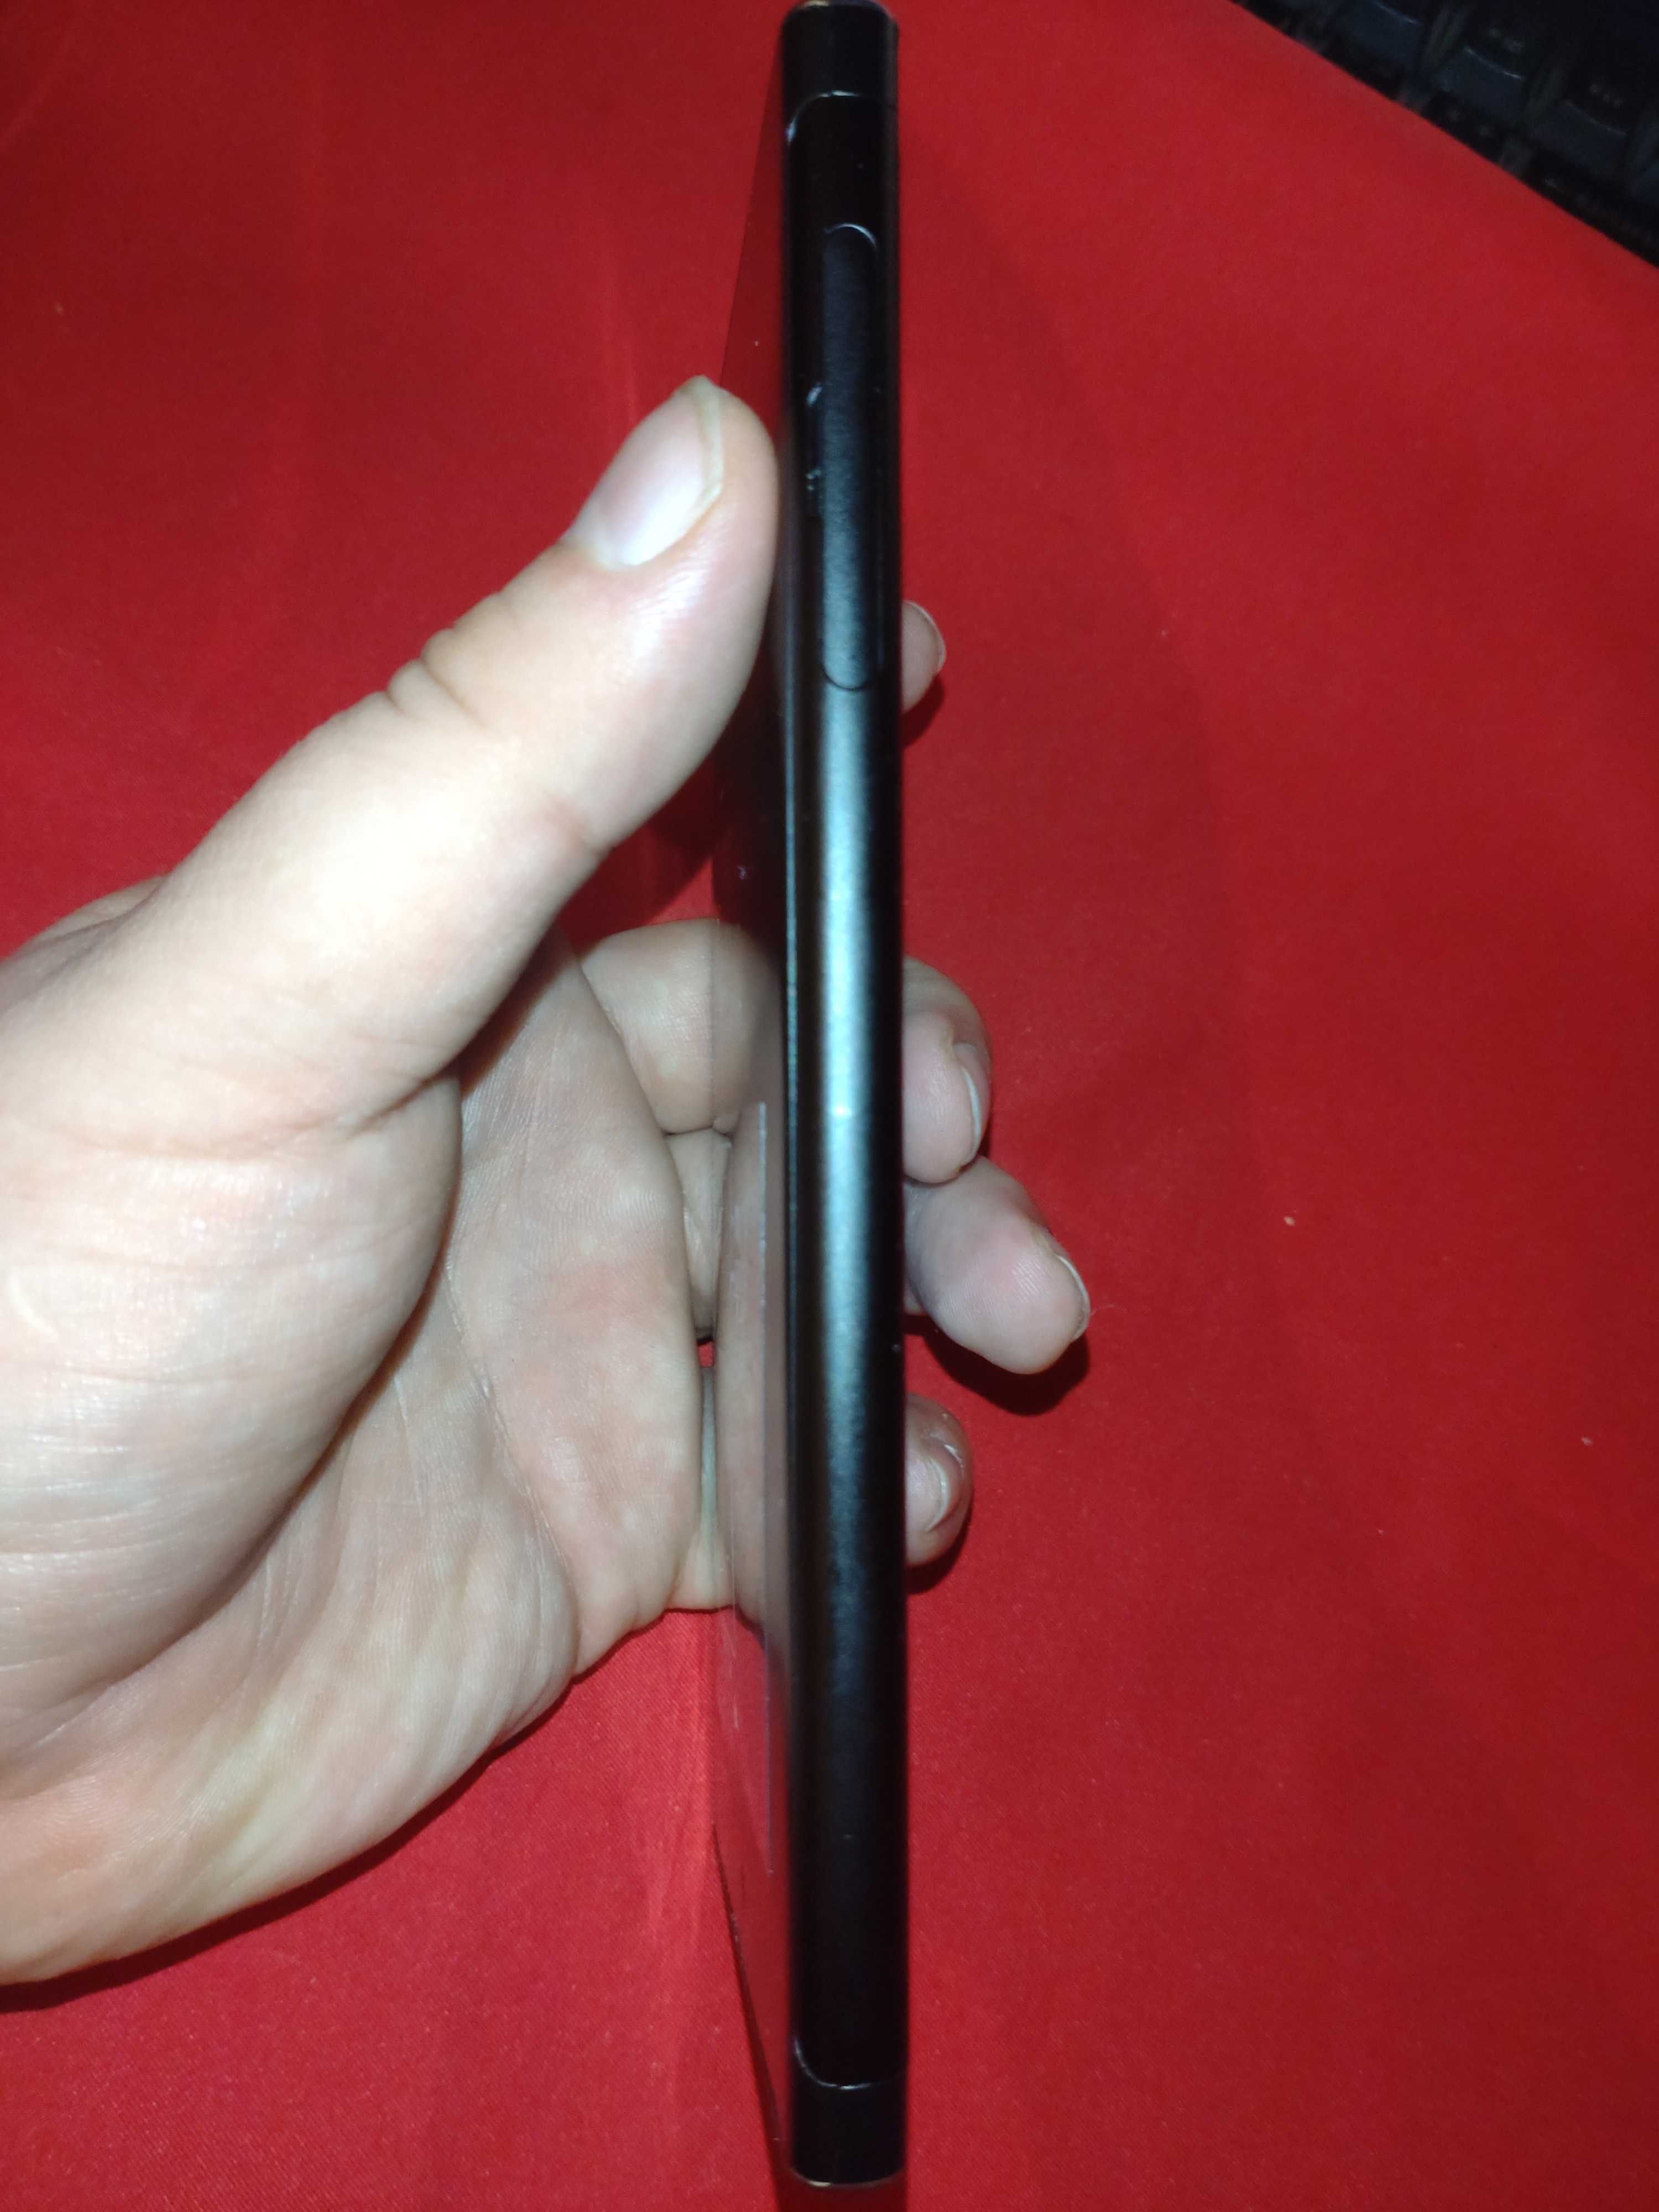 Смартфон Sony Xperia XA1 Plus Black